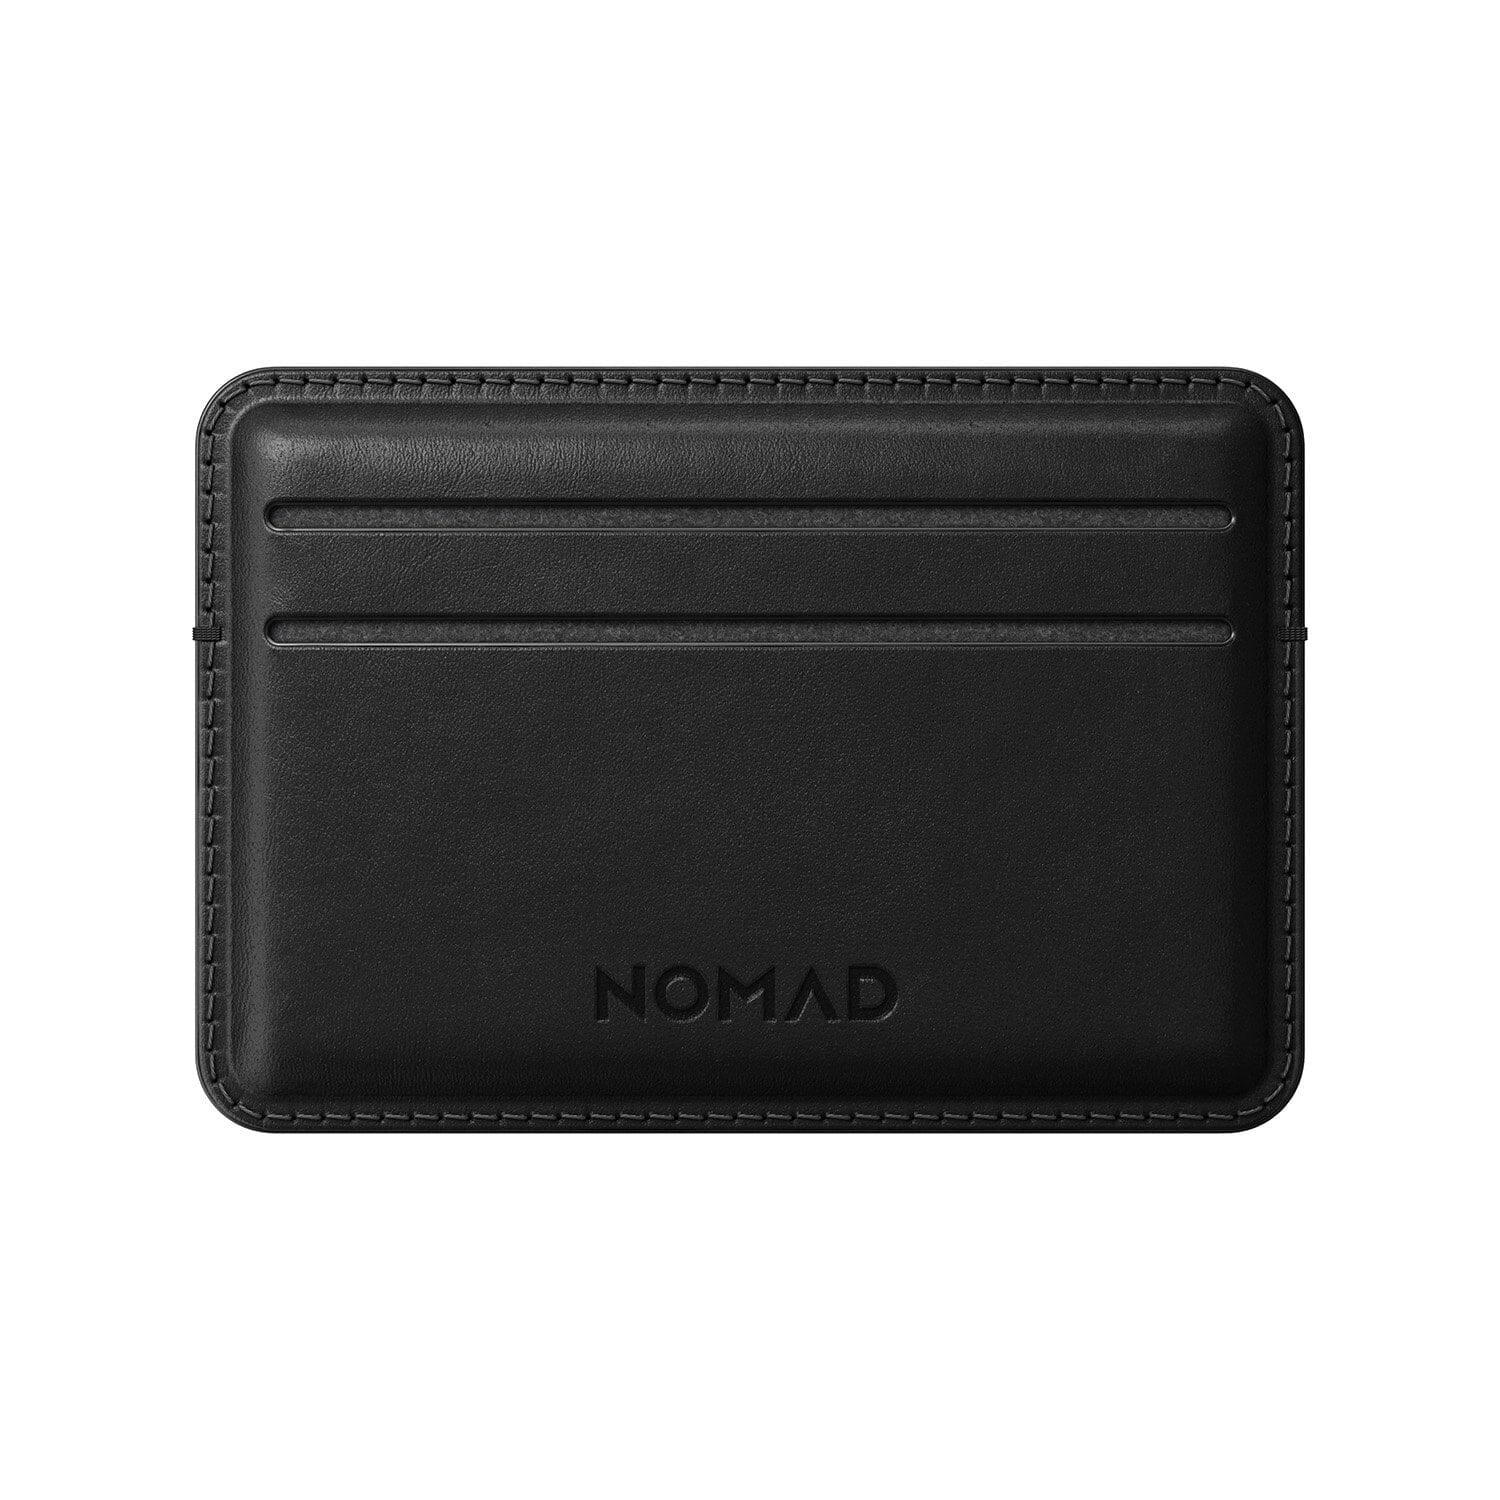 NOMAD Horween Leather Card Wallet, Rustic Brown/Black Wallet NOMAD Black 